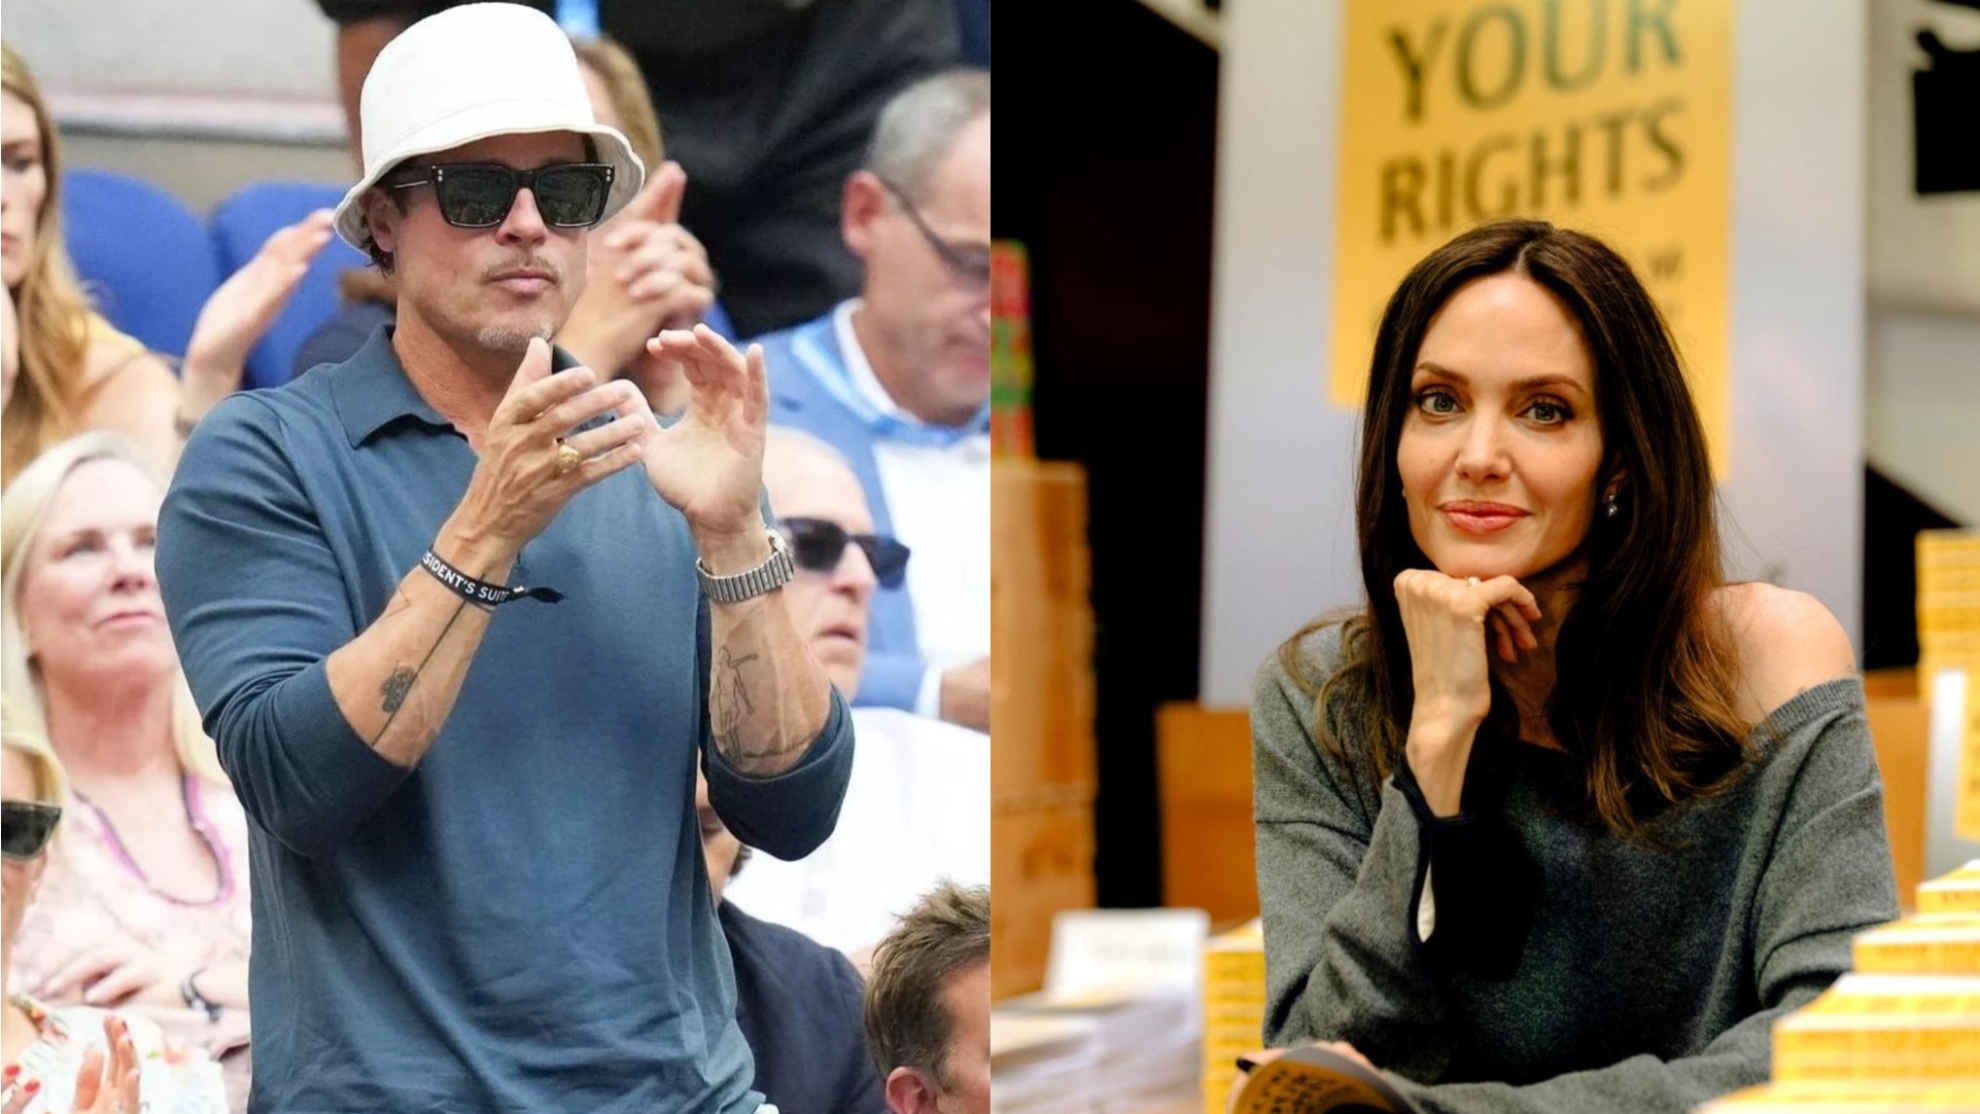 BRad Pitt and Angelina Jolie mashup